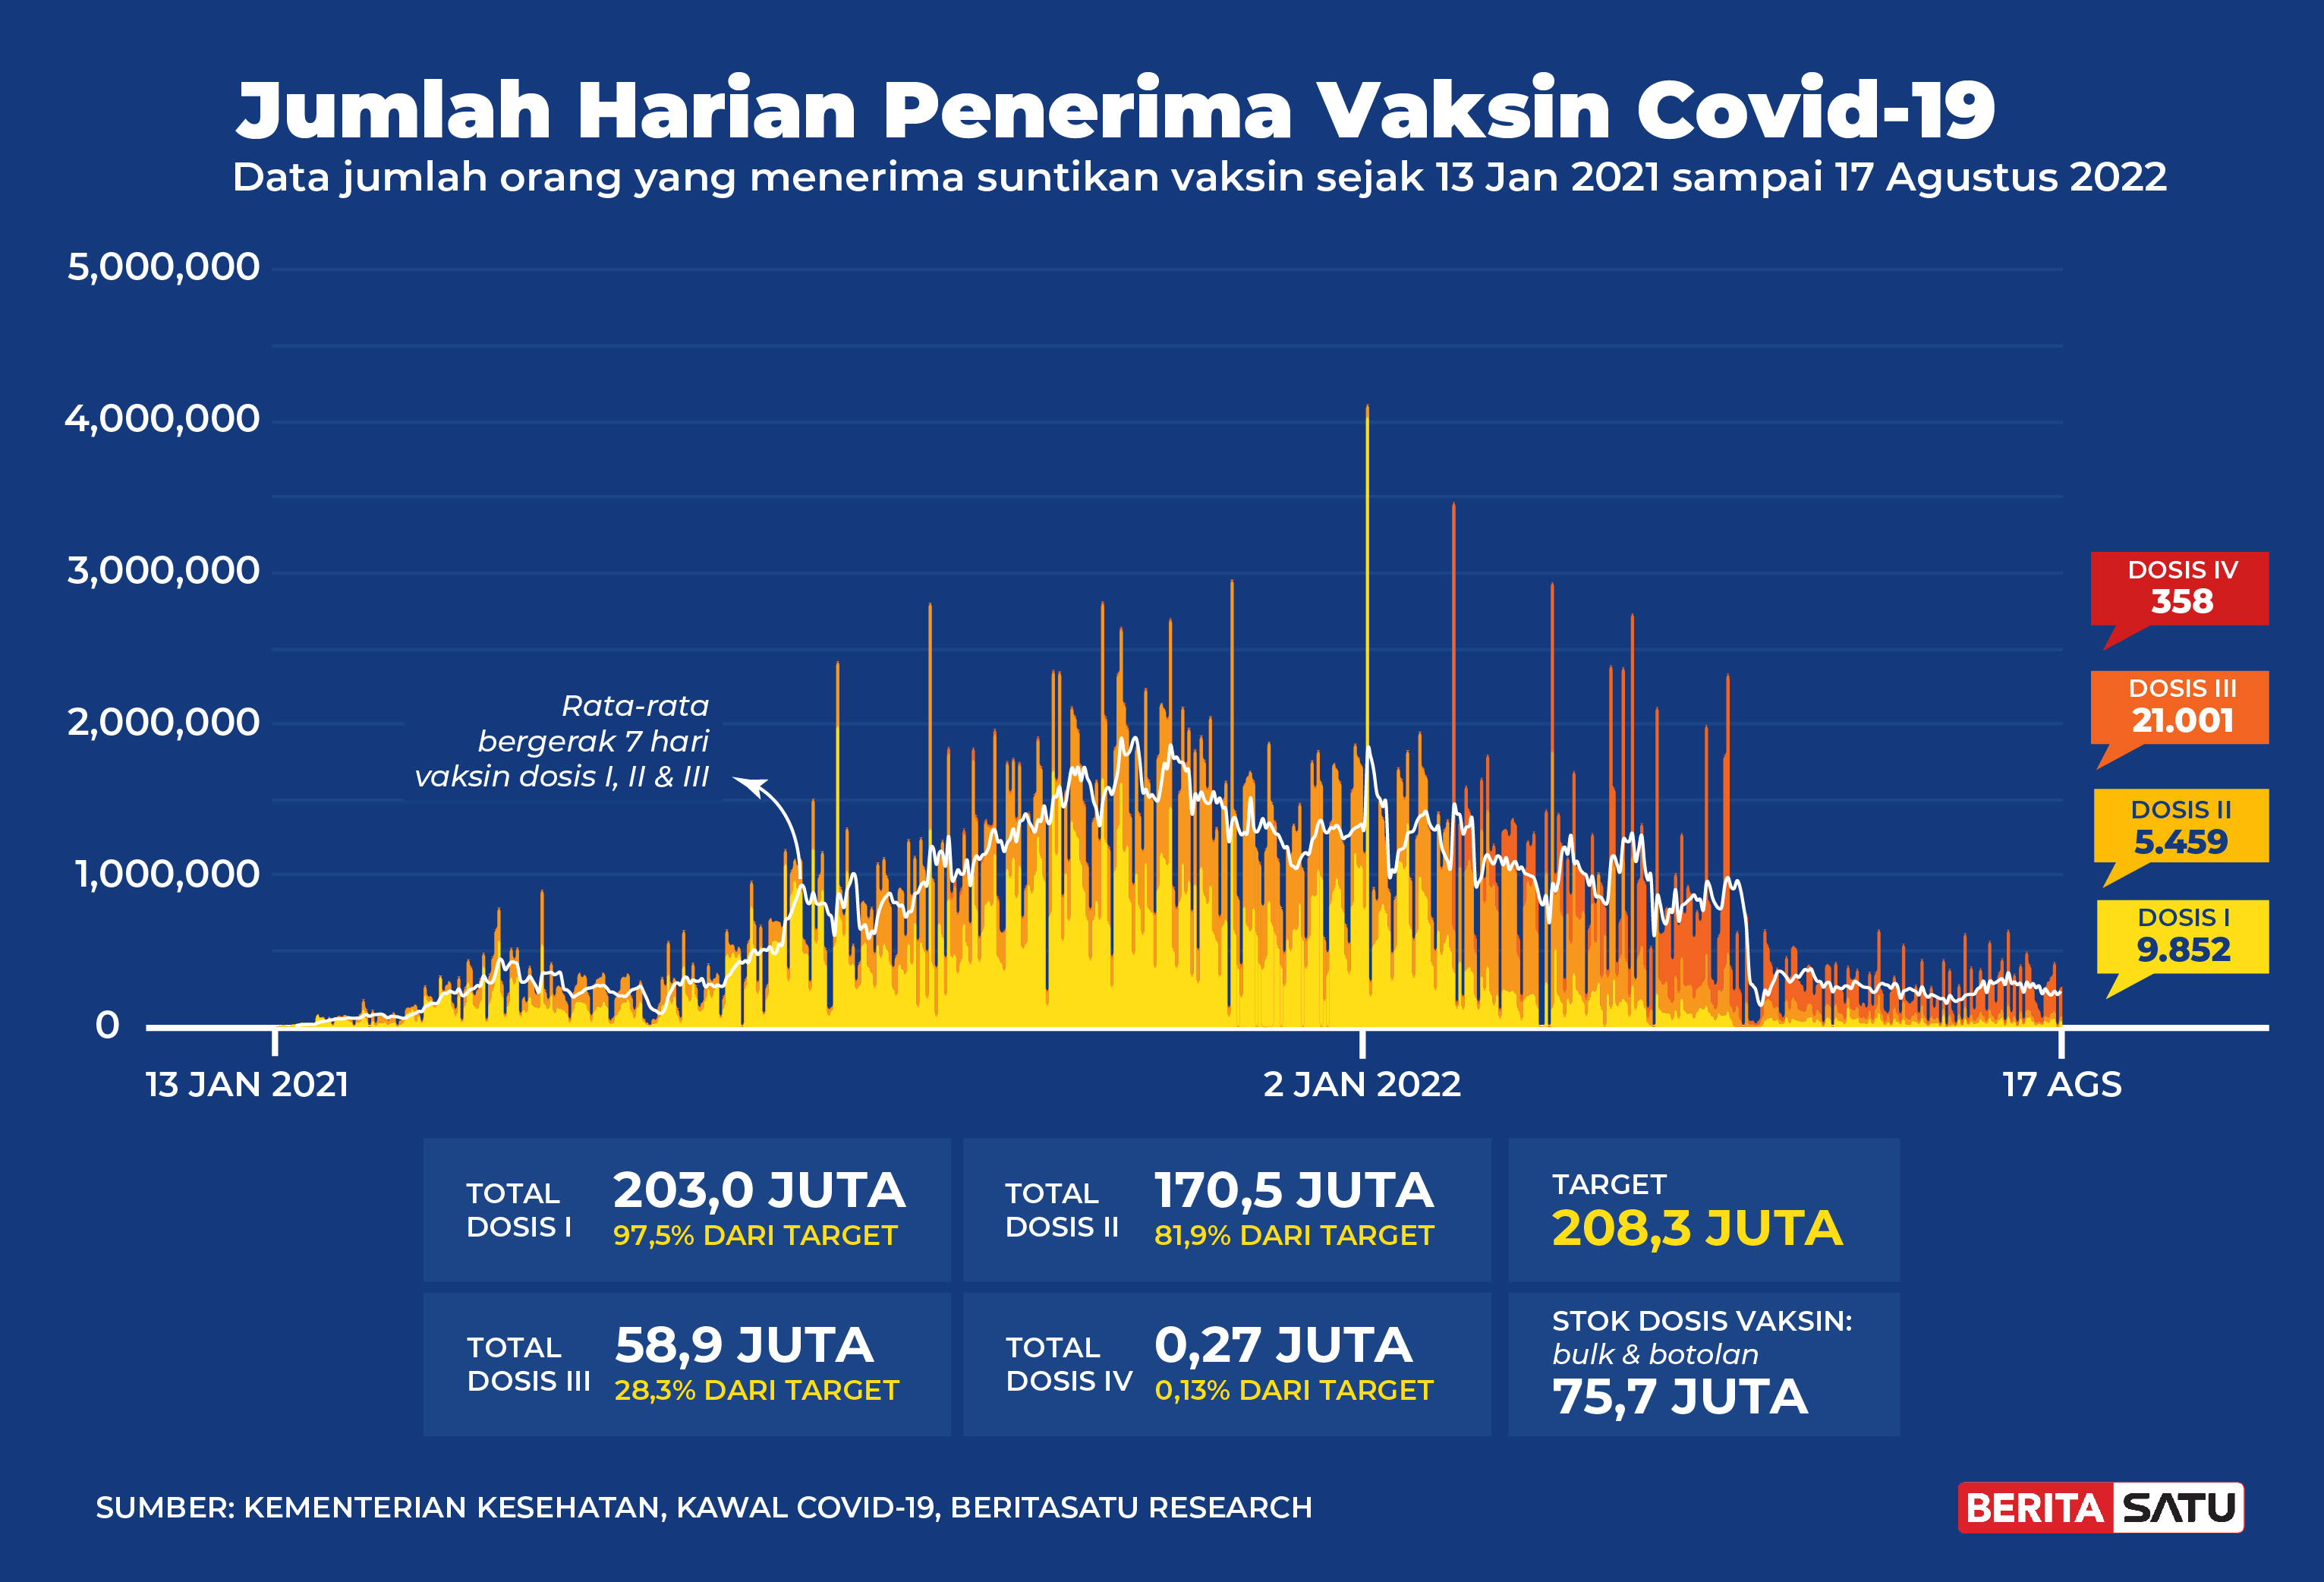 Penerima Vaksin Covid-19 di Indonesia sampai 17 Agustus 2022